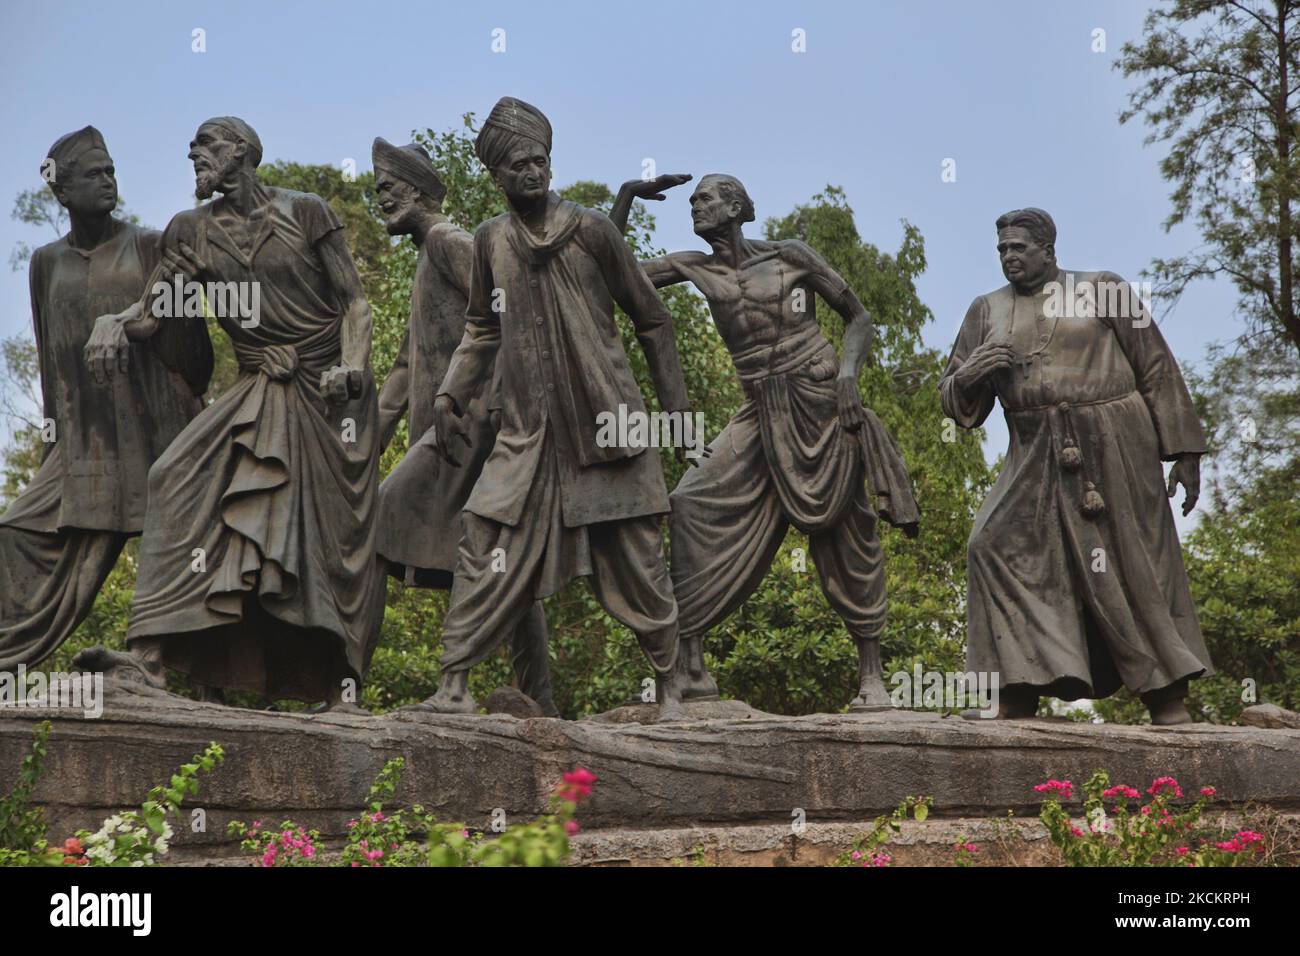 Detail der verschiedenen Figuren aus allen Gesellschaftsschichten der (indischen) Gesellschaft, die einer Statue von Mahatma Gandhi in Neu-Delhi, Delhi, Indien, am 12. Juli 2014 folgen. (Foto von Creative Touch Imaging Ltd./NurPhoto) Stockfoto